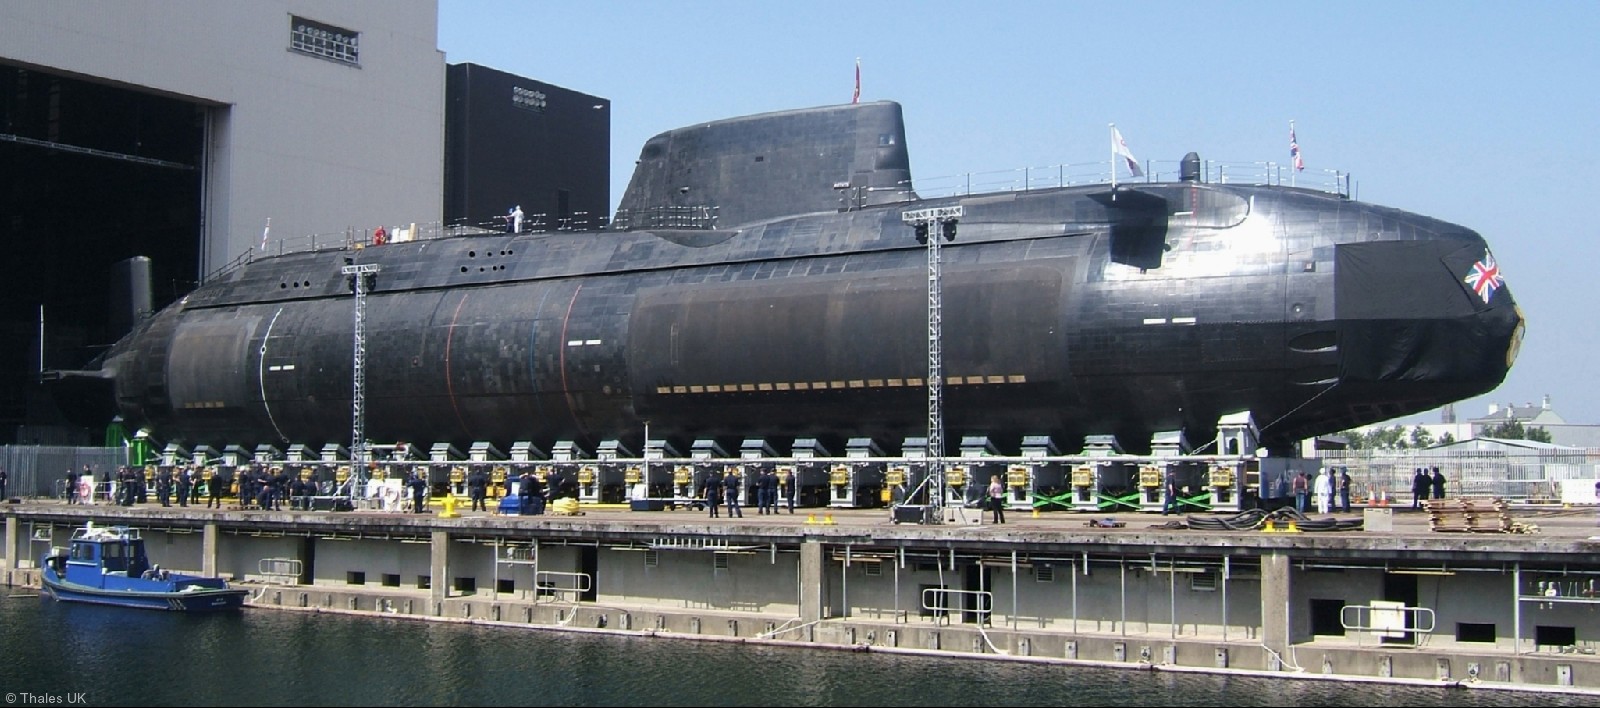 s119 hms astute s-119 attack submarine ssn hunter killer royal navy 24